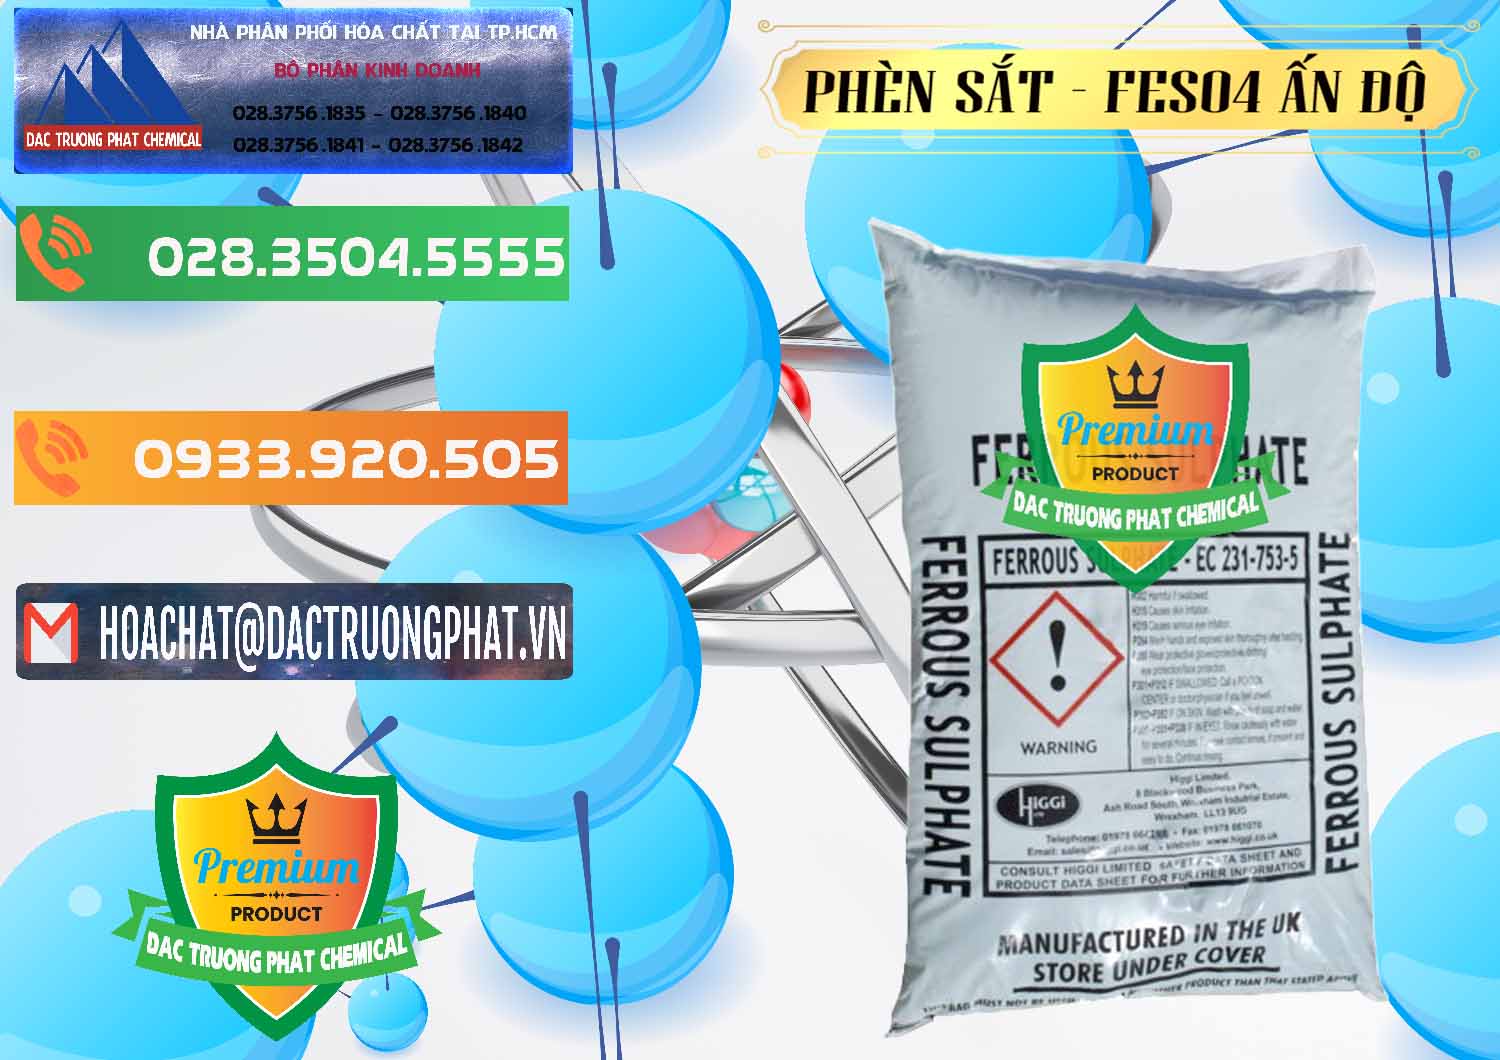 Đơn vị chuyên bán - phân phối Phèn Sắt - FeSO4.7H2O Ấn Độ India - 0354 - Cty chuyên kinh doanh _ phân phối hóa chất tại TP.HCM - hoachatxulynuoc.com.vn